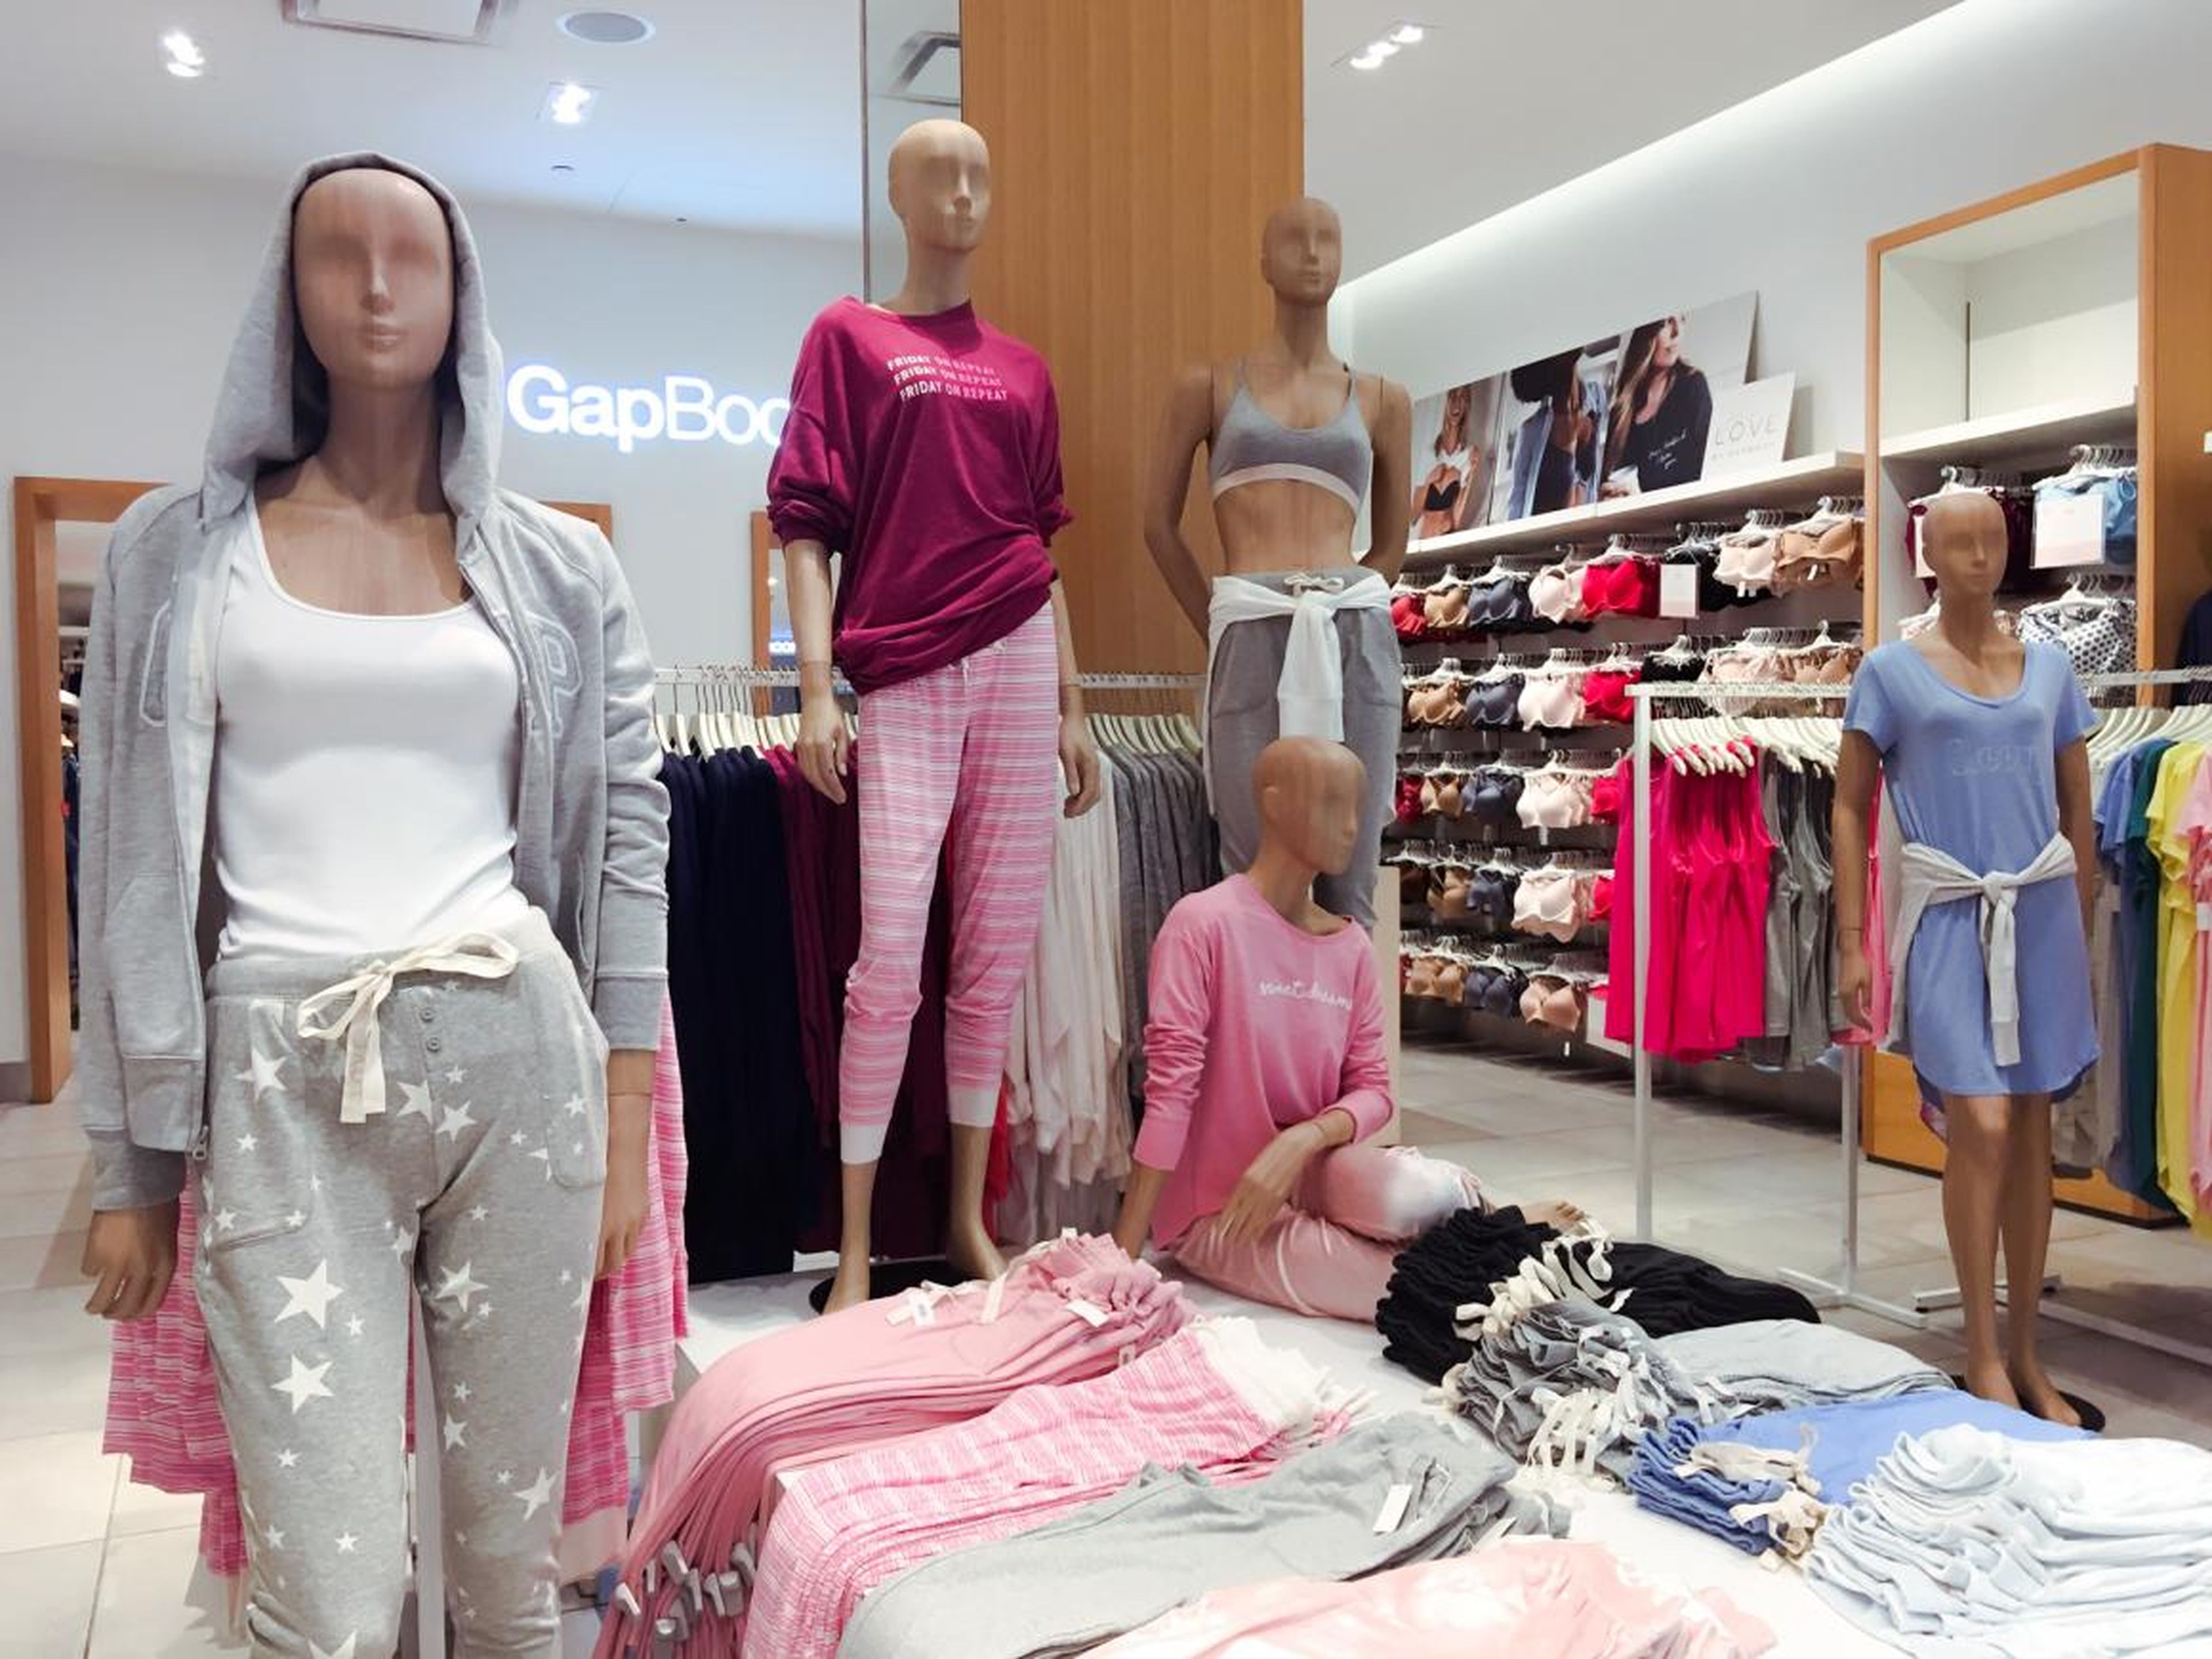 Más tarde, Gap también abrió GapBody para ropa íntima y deportiva y BabyGap para ropa de bebé.